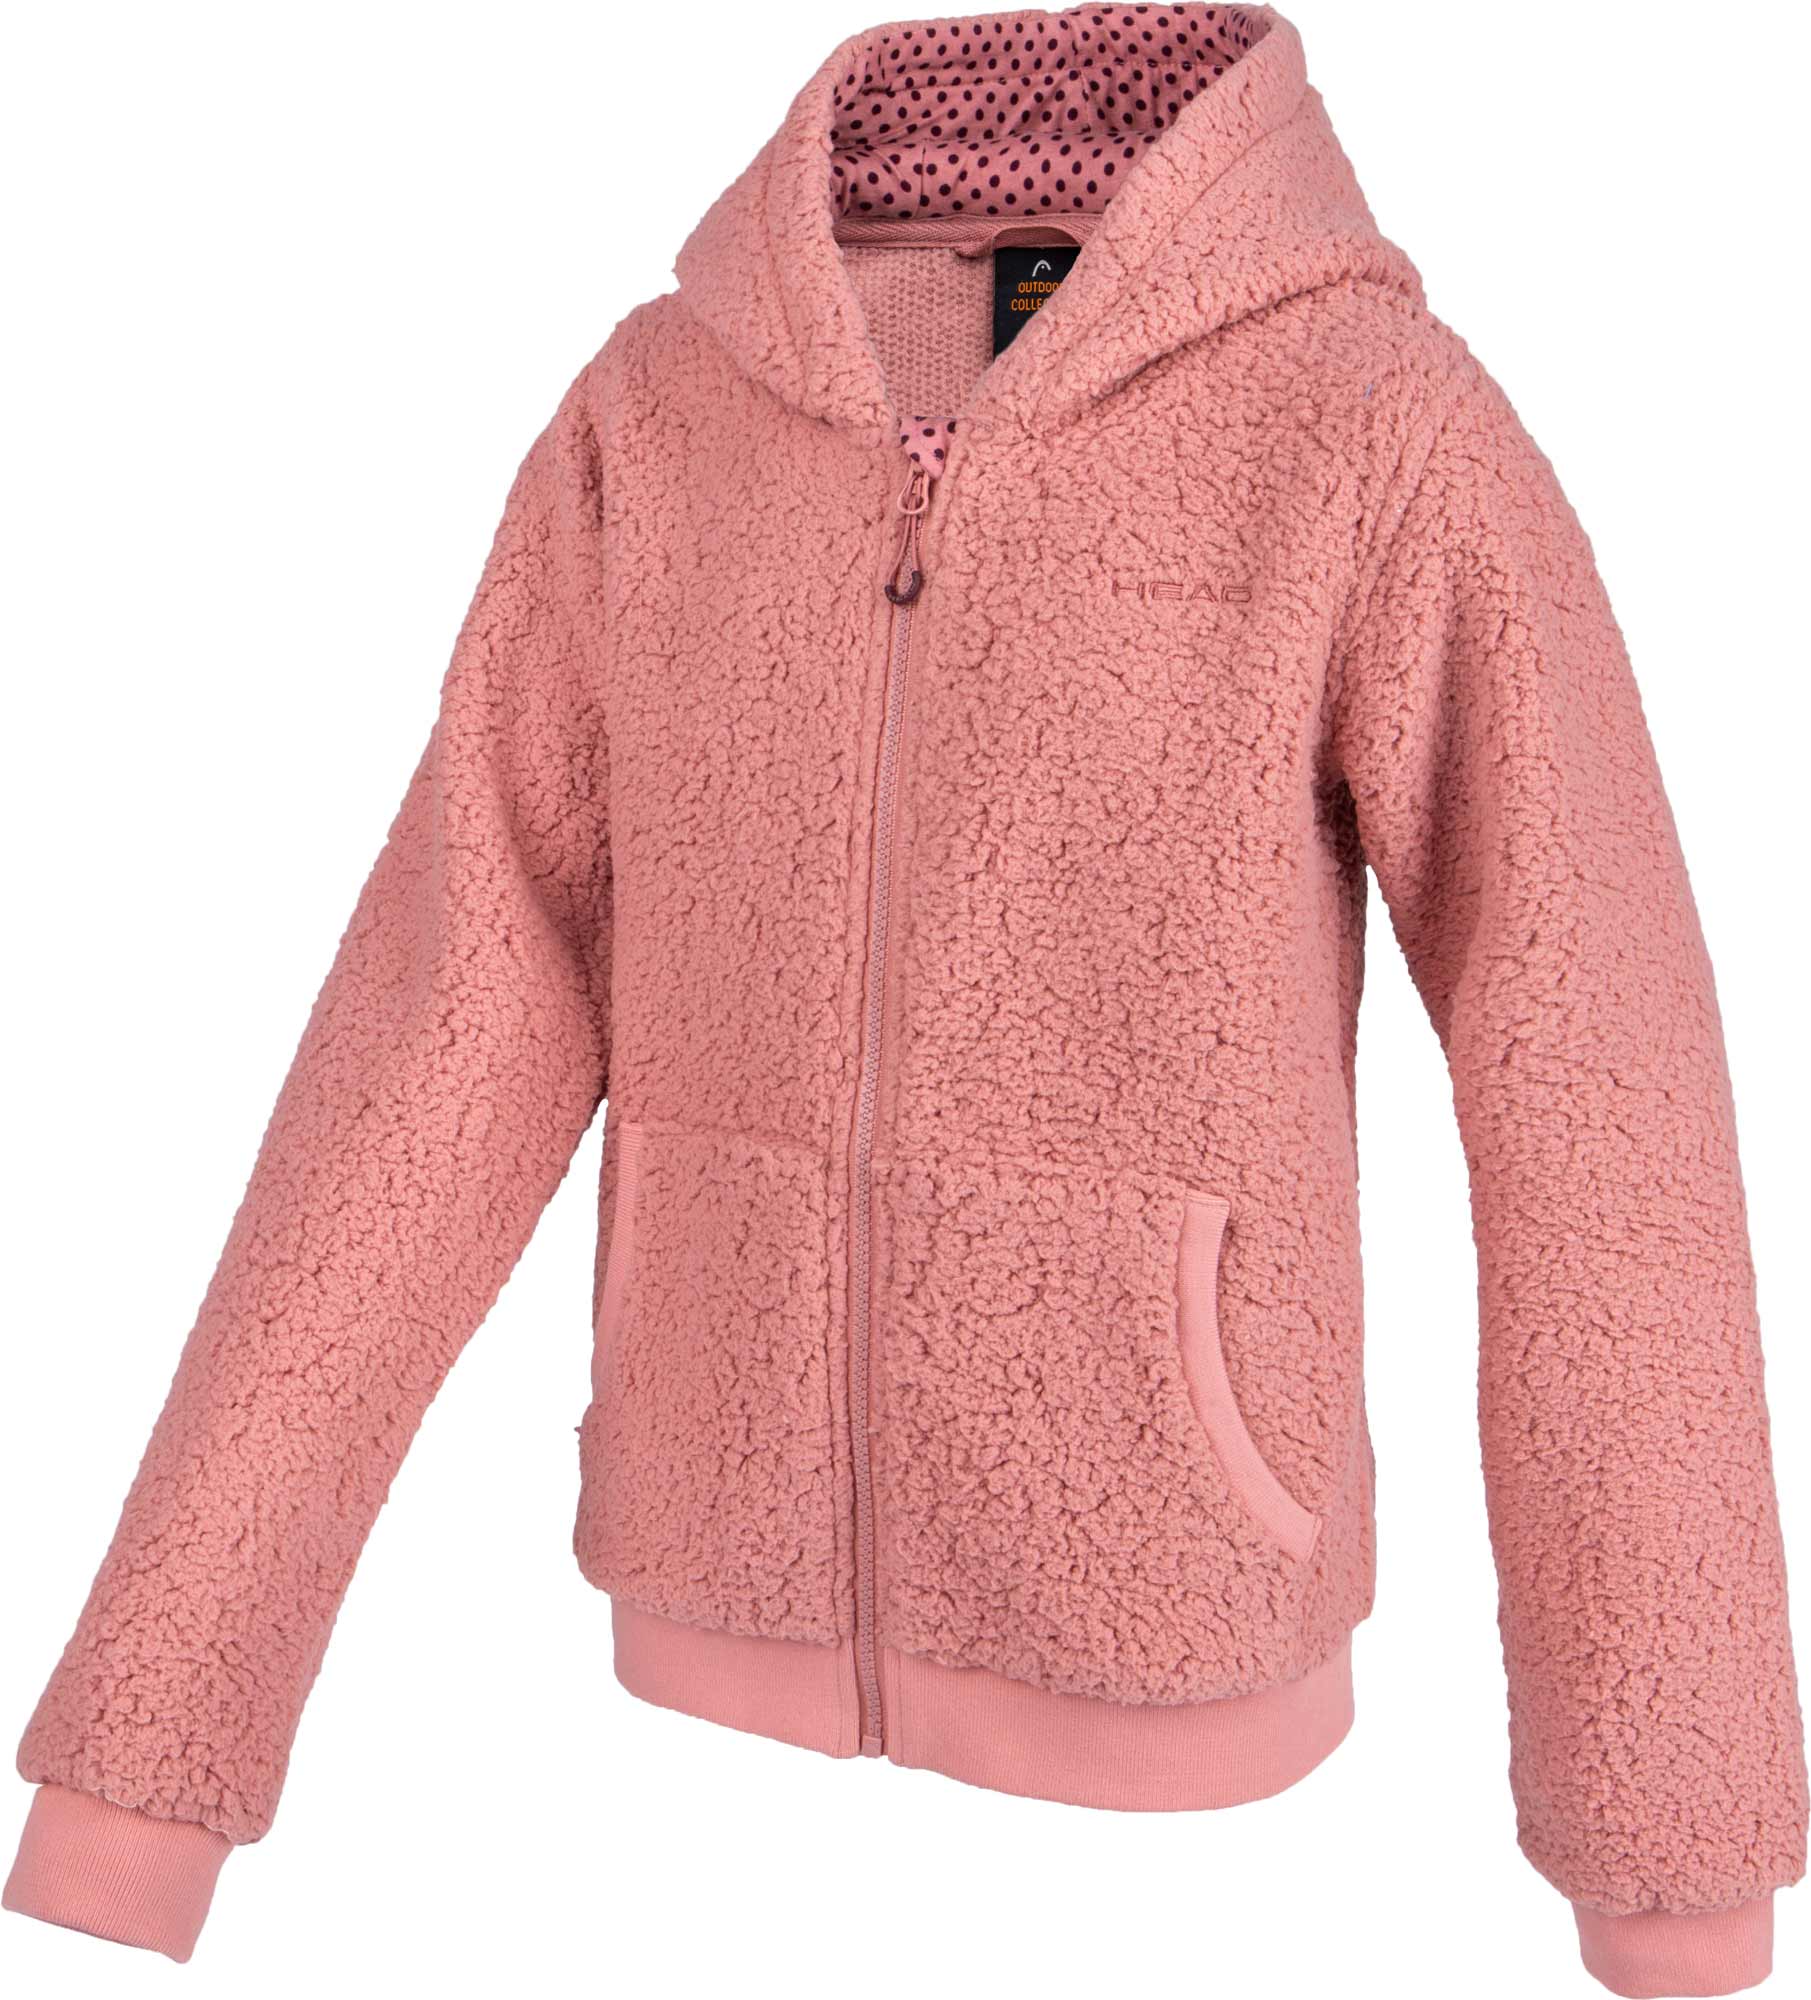 Girls' fleece hoodie